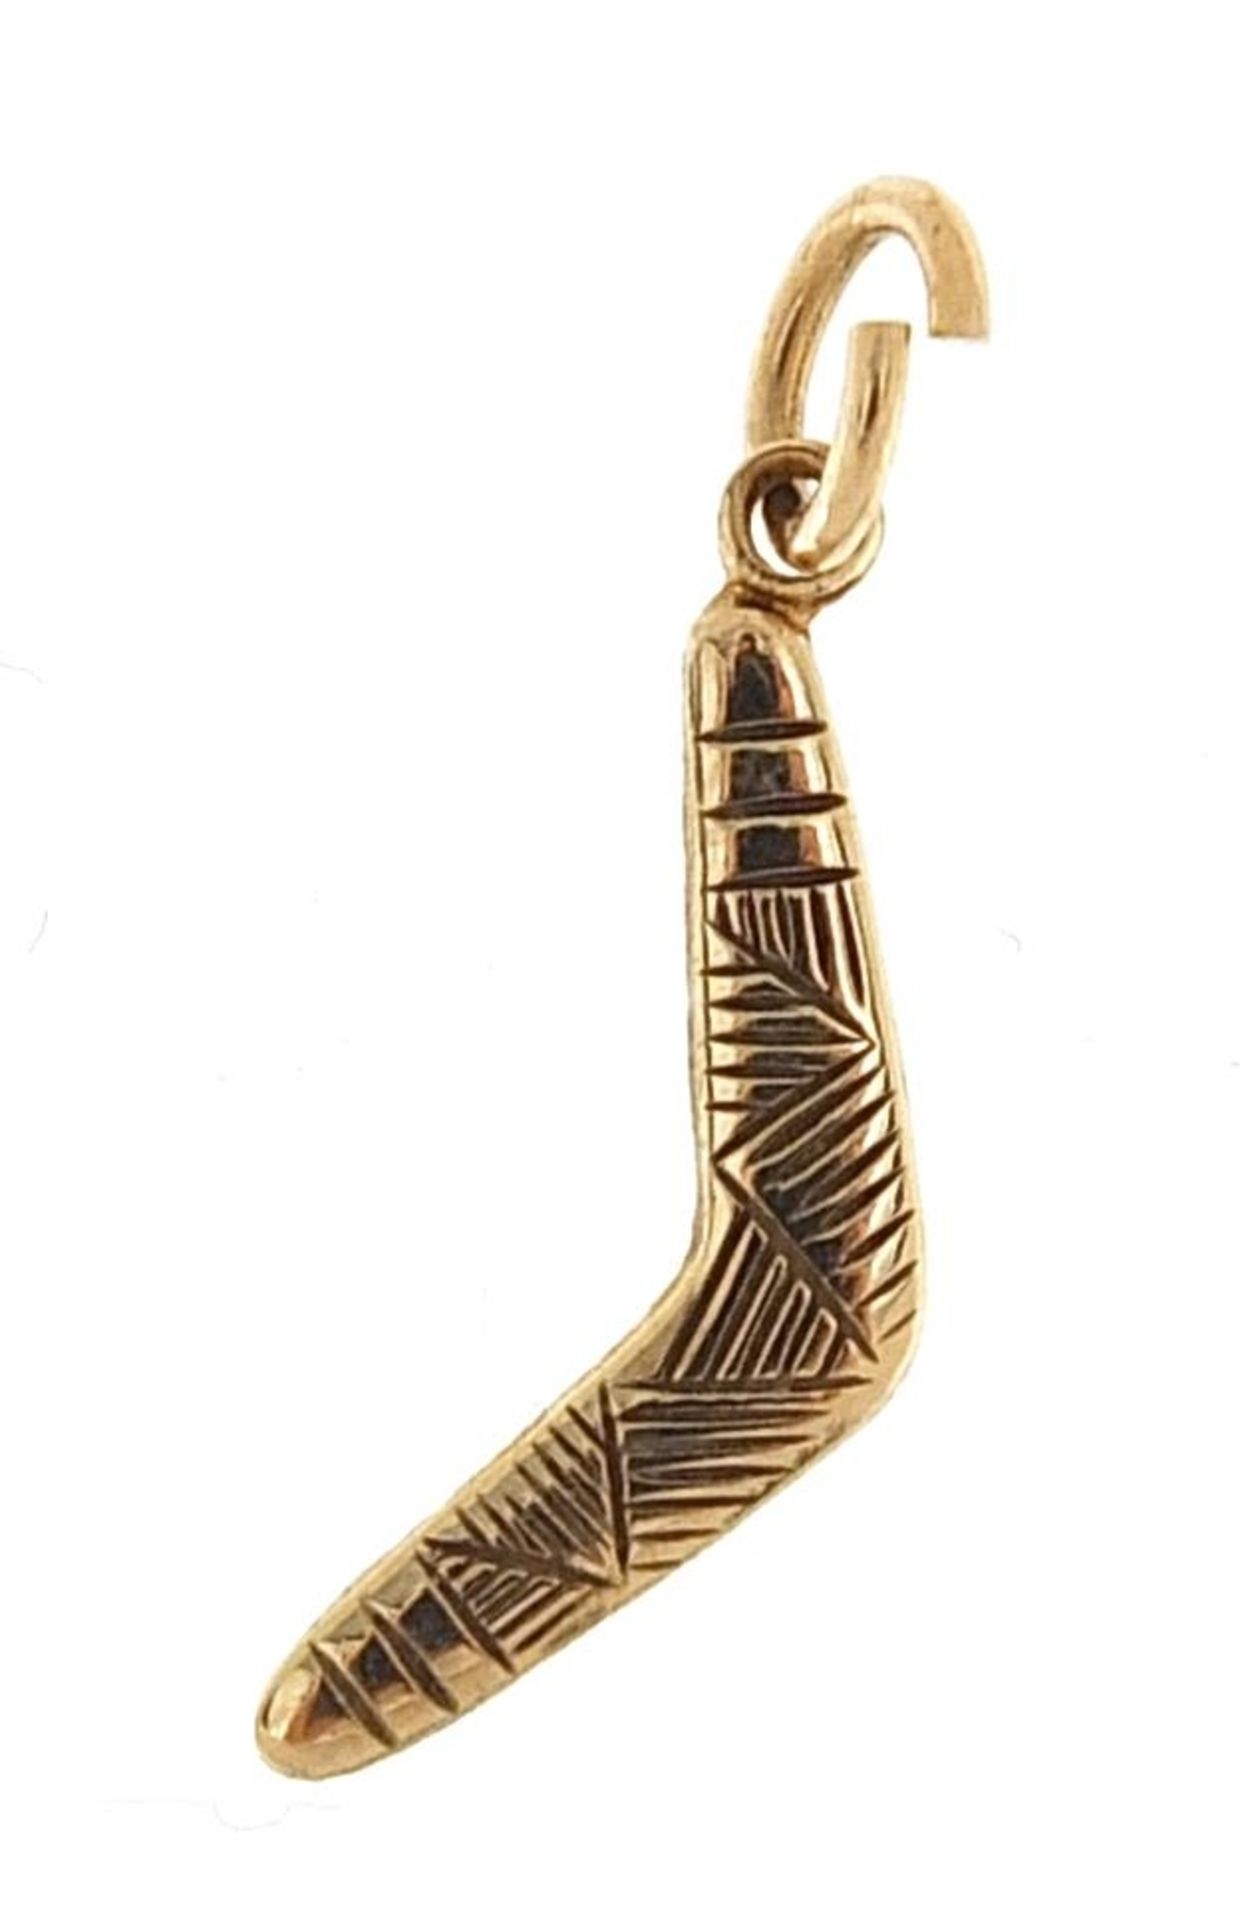 9ct gold boomerang charm, 1.9cm high, 0.5g